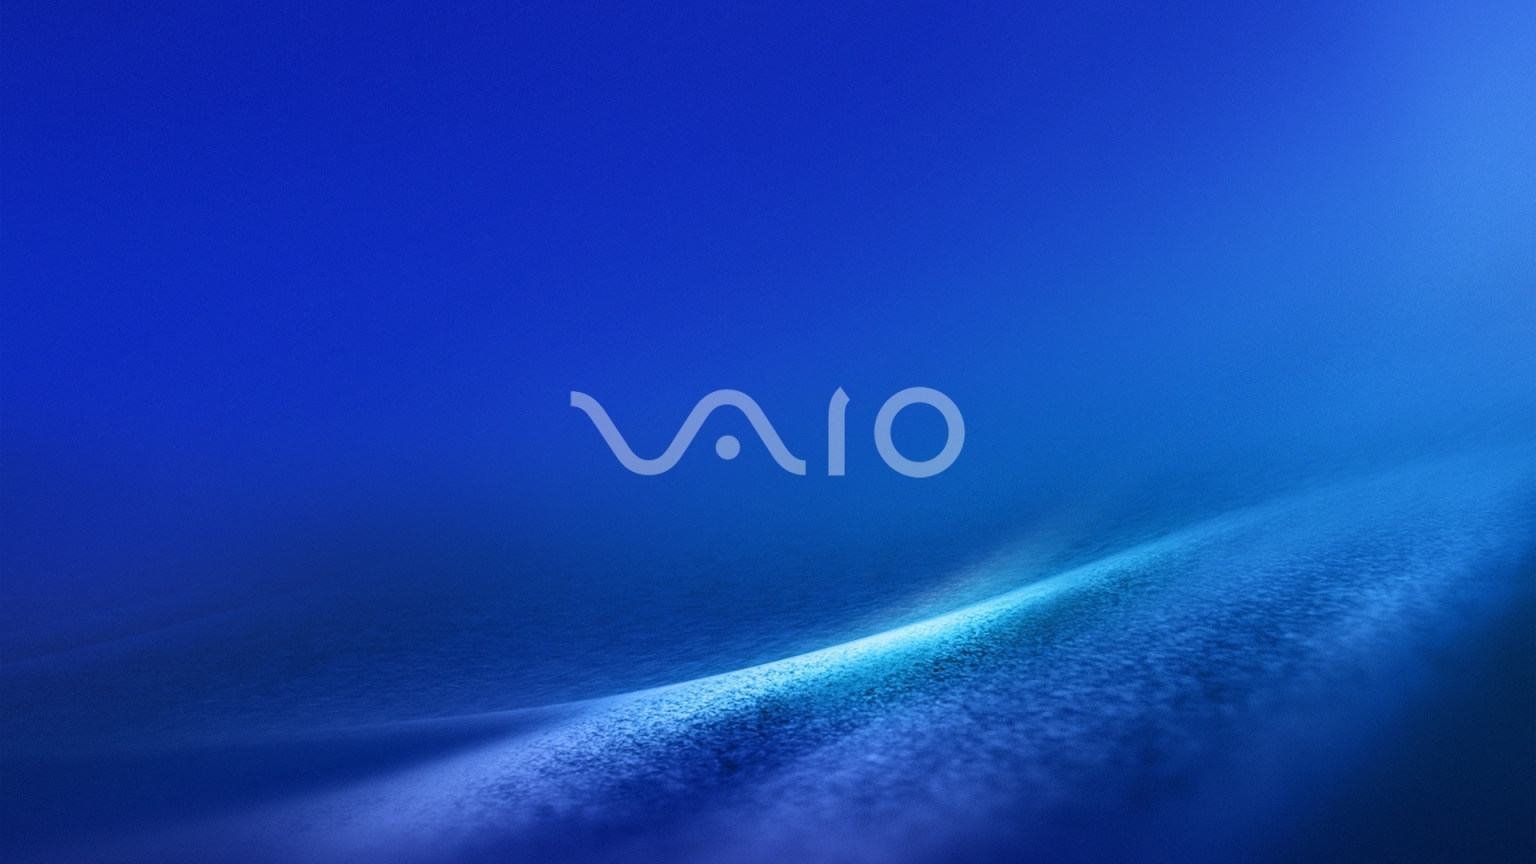 Vaio Dark Blue for 1536 x 864 HDTV resolution